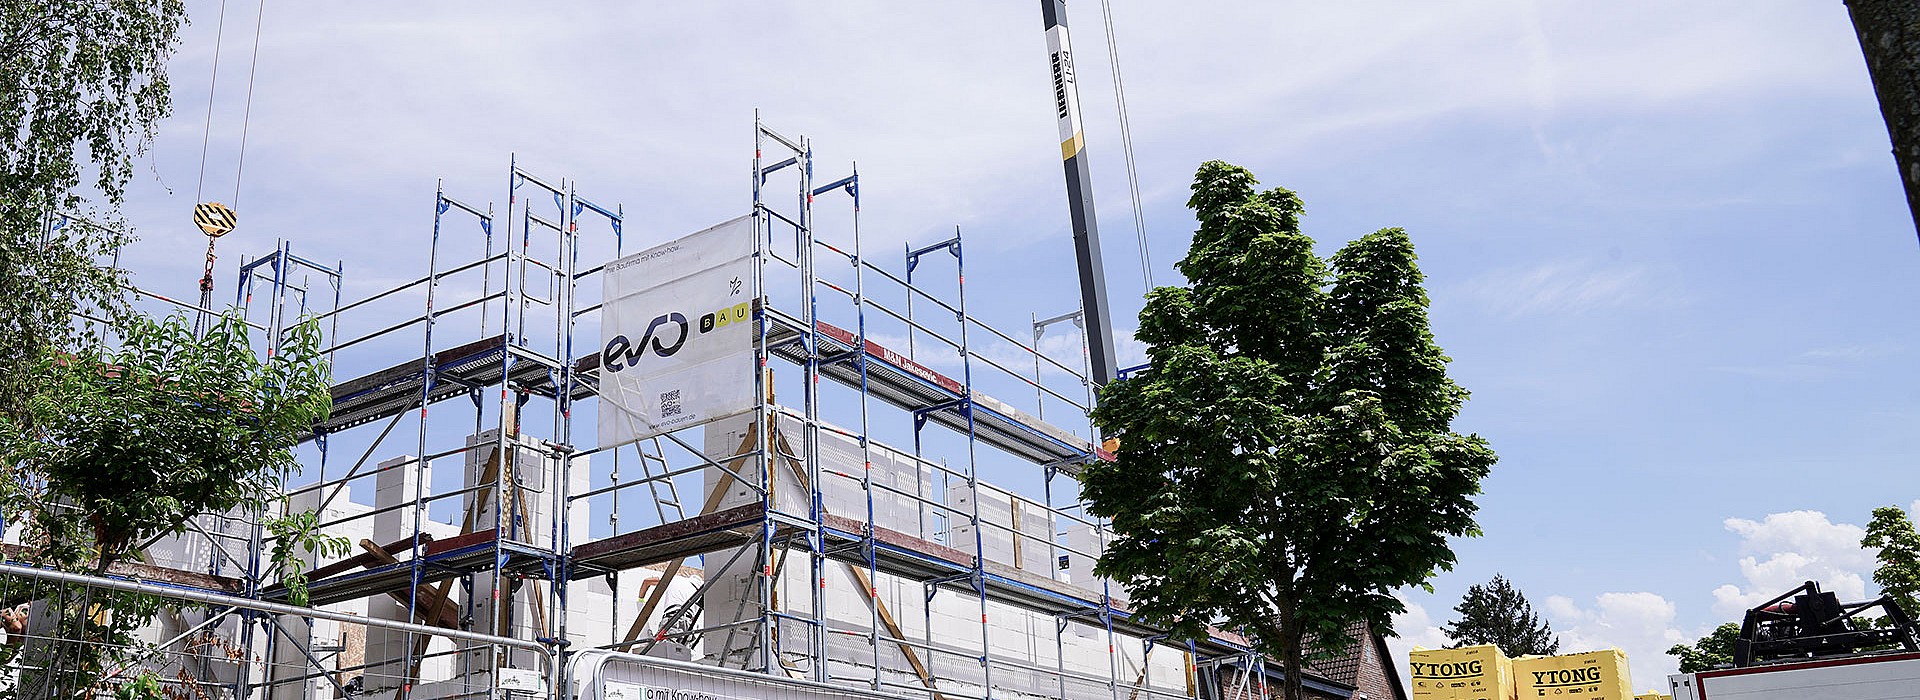 Evo Bau - Ihre Baufirma mit Know-how im Rheinland und Ruhrgebiet